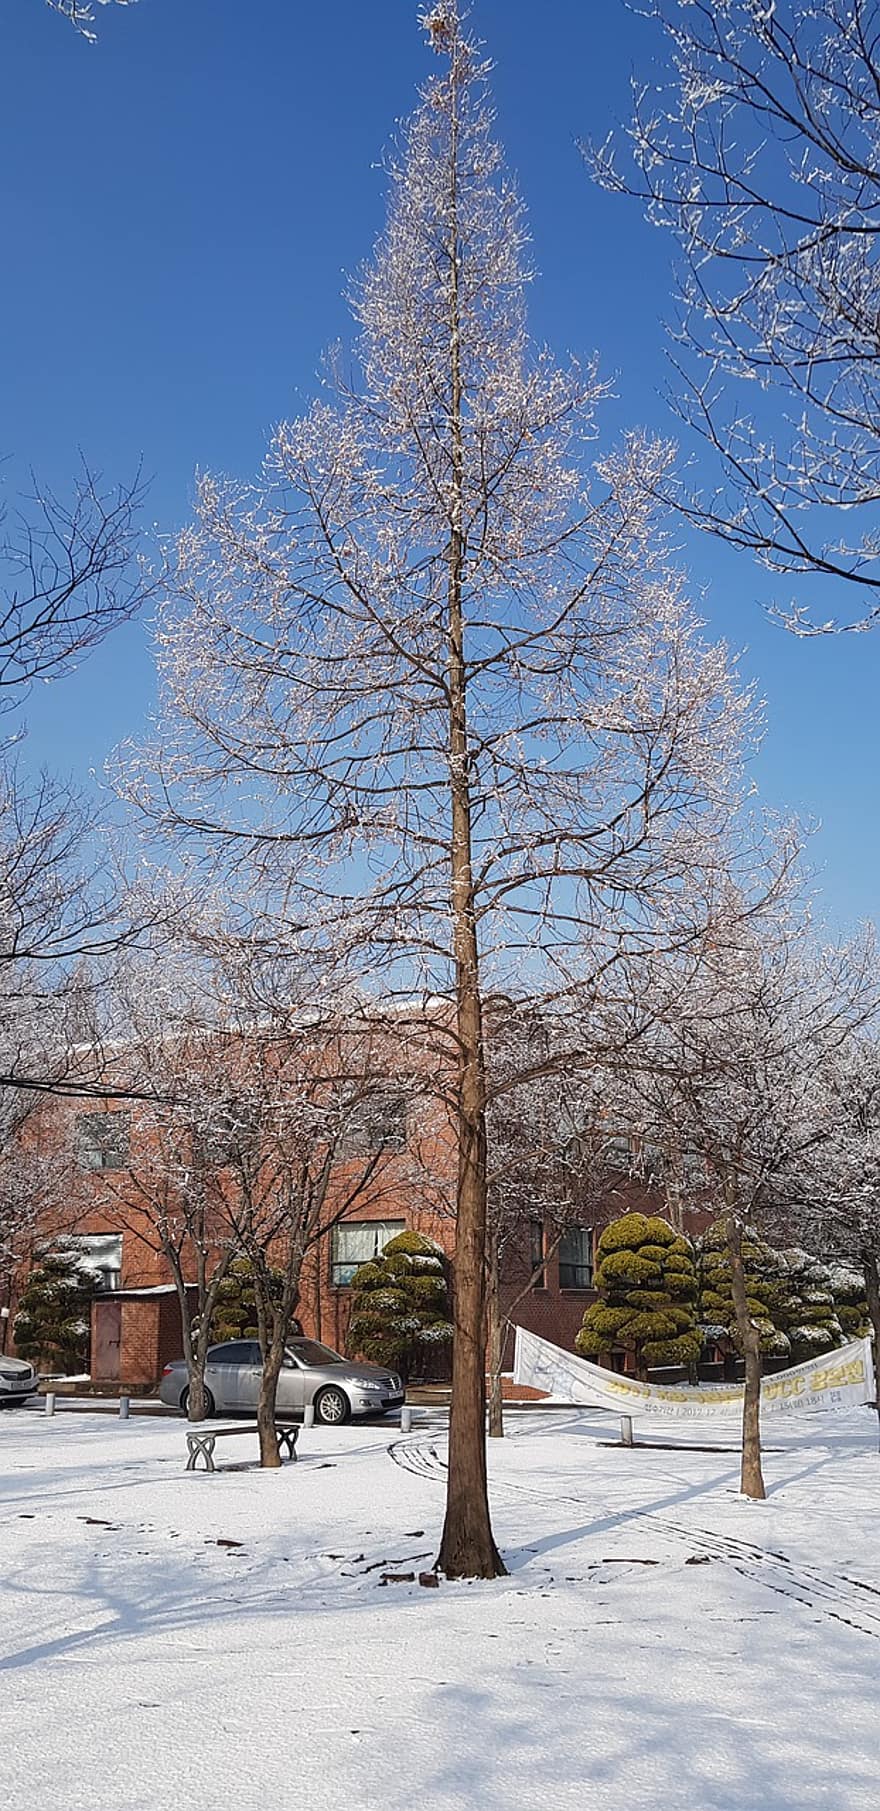 дърво, зима, сезон, сняг, Hwaseong, Корея, син, клон, селска сцена, пейзаж, гора